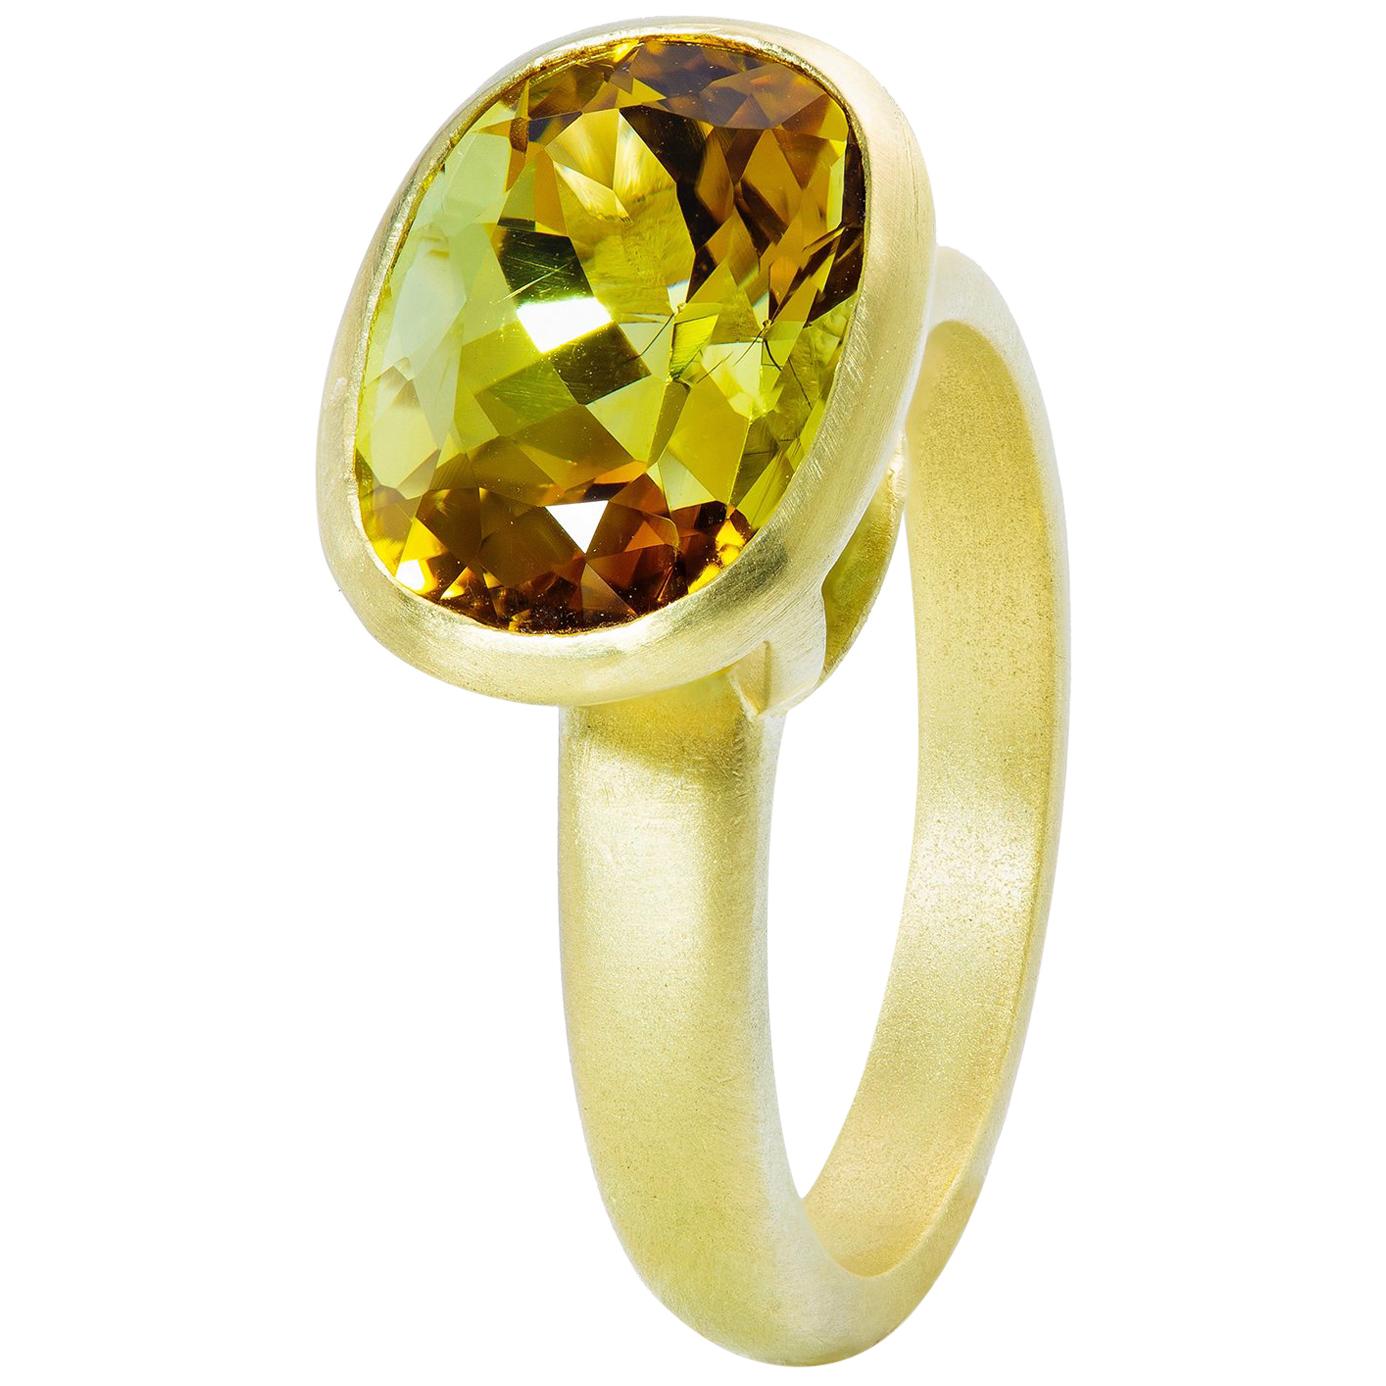 Faye Kim 18k Gold 5.54 Carat Yellow-Olive Cushion Cut Tourmaline Ring